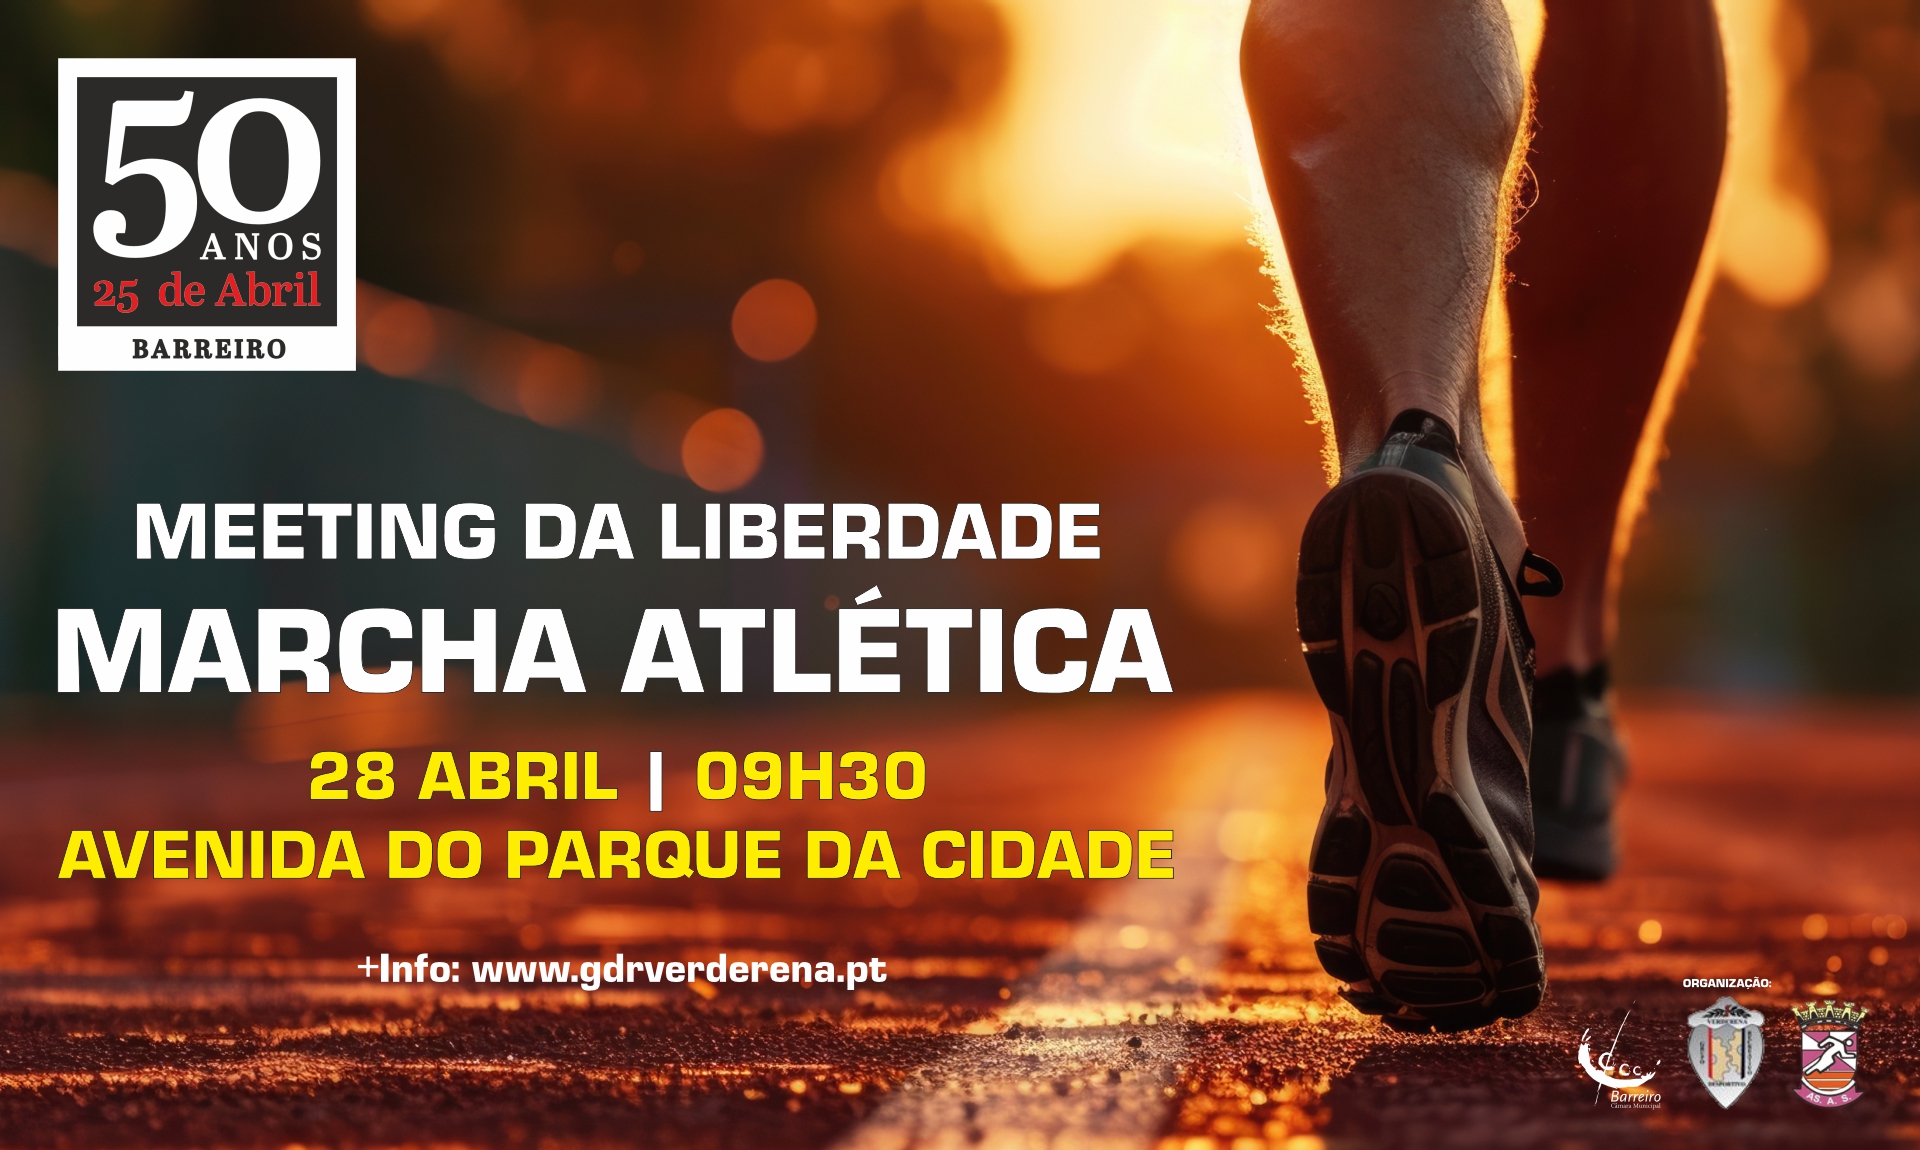 Meeting da Liberdade de Marcha Atlética | 28 abril | 09h30 | Av. Parque da Cidade